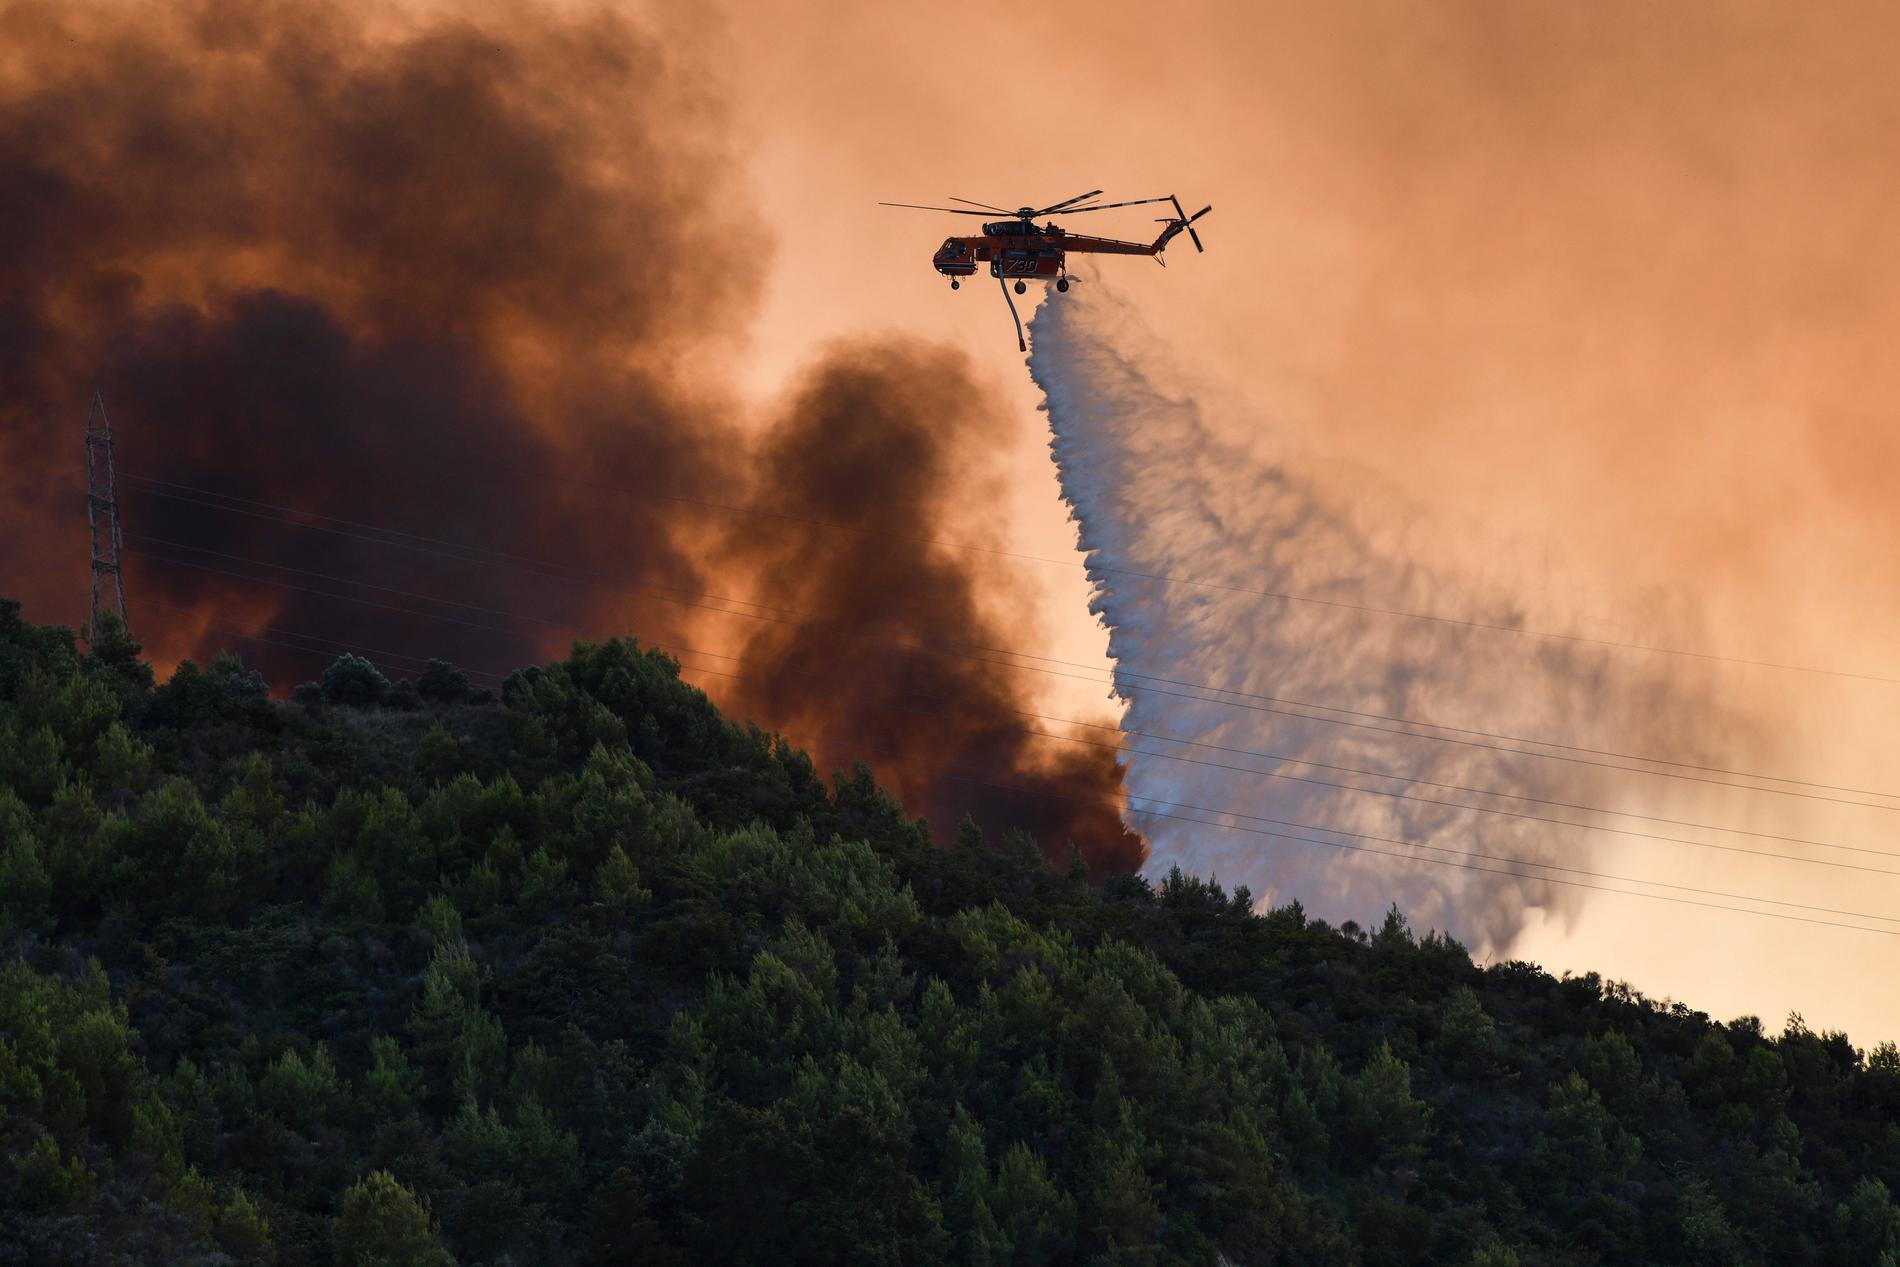 Helikoptrar kämpar med att vattenbomba bränderna. 